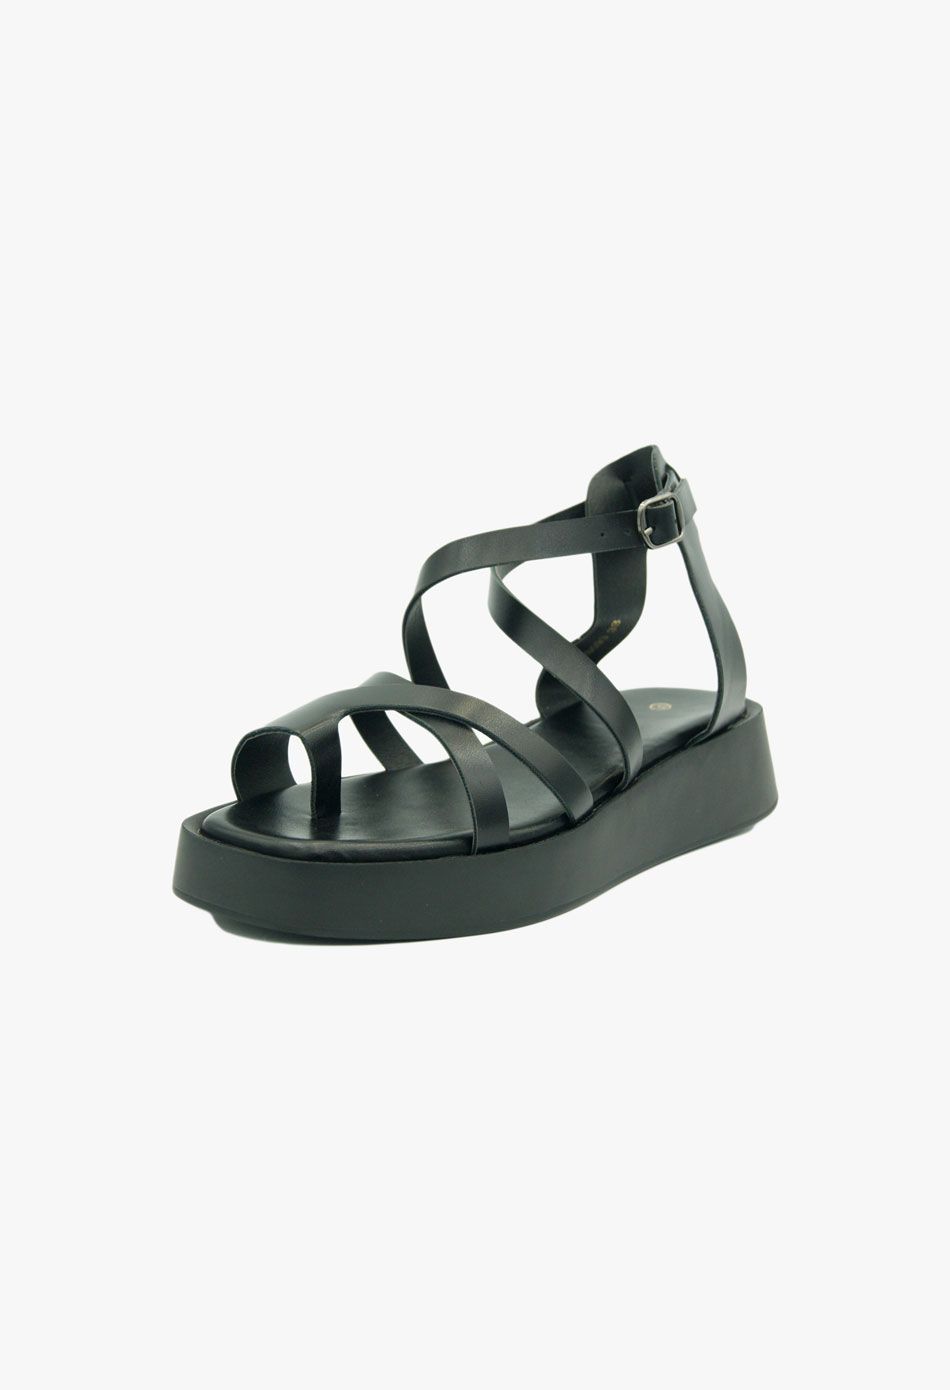 Πλατφόρμες με Χαμηλό Πέλμα & Χιαστί Λουράκια / A6093-black Ανοιχτά Παπούτσια joya.gr